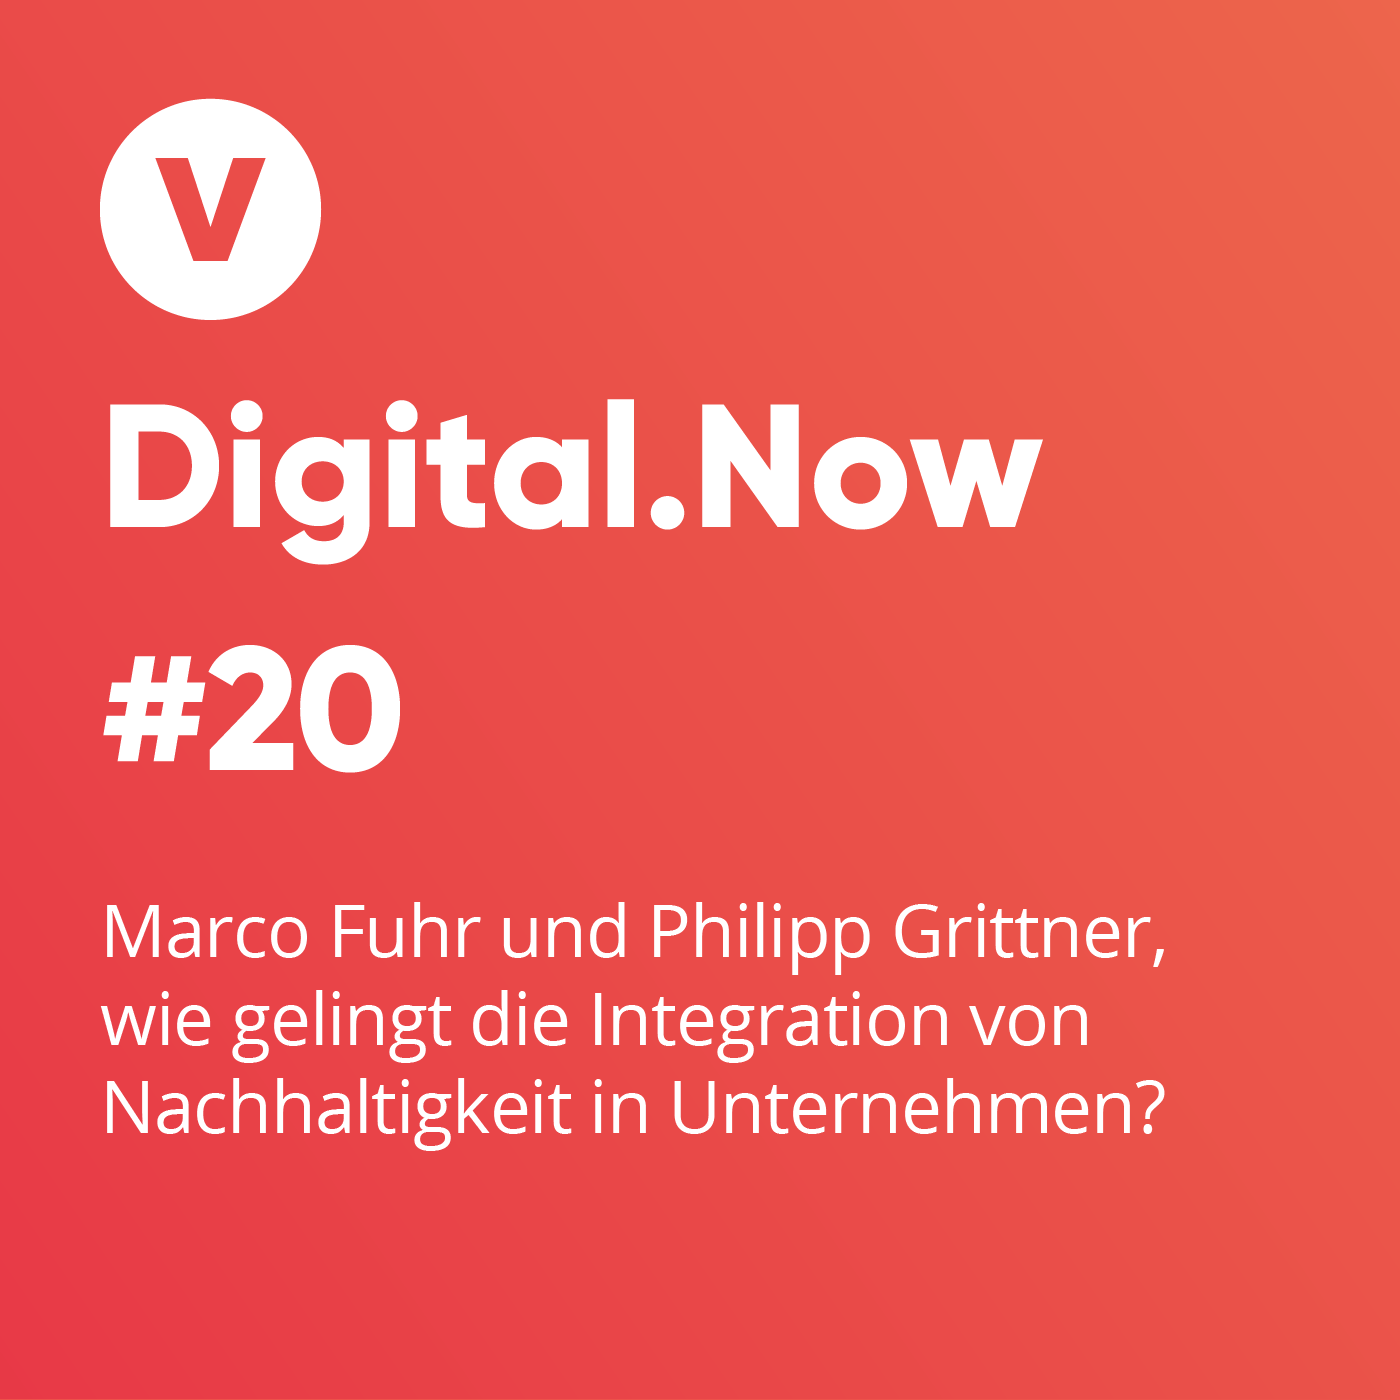 Marco Fuhr und Philipp Grittner, wie gelingt die Integration von Nachhaltigkeit in Unternehmen?